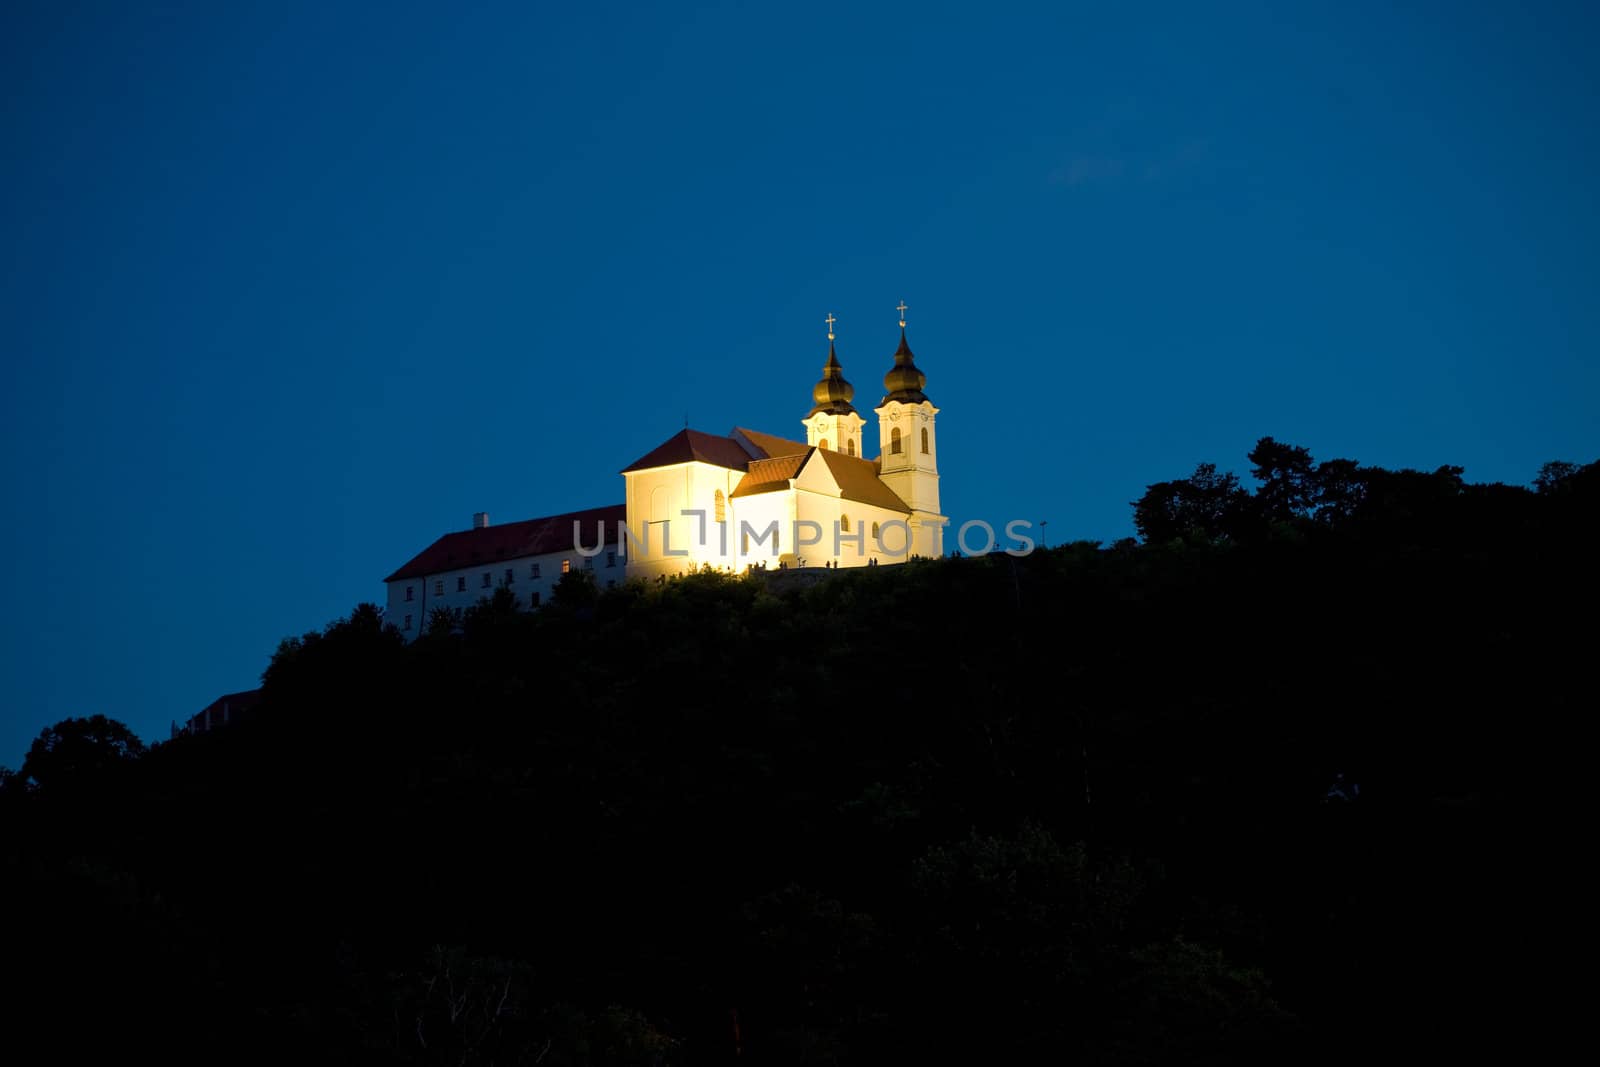 Tihany Abbey at night a Lake Balaton, Hungary.